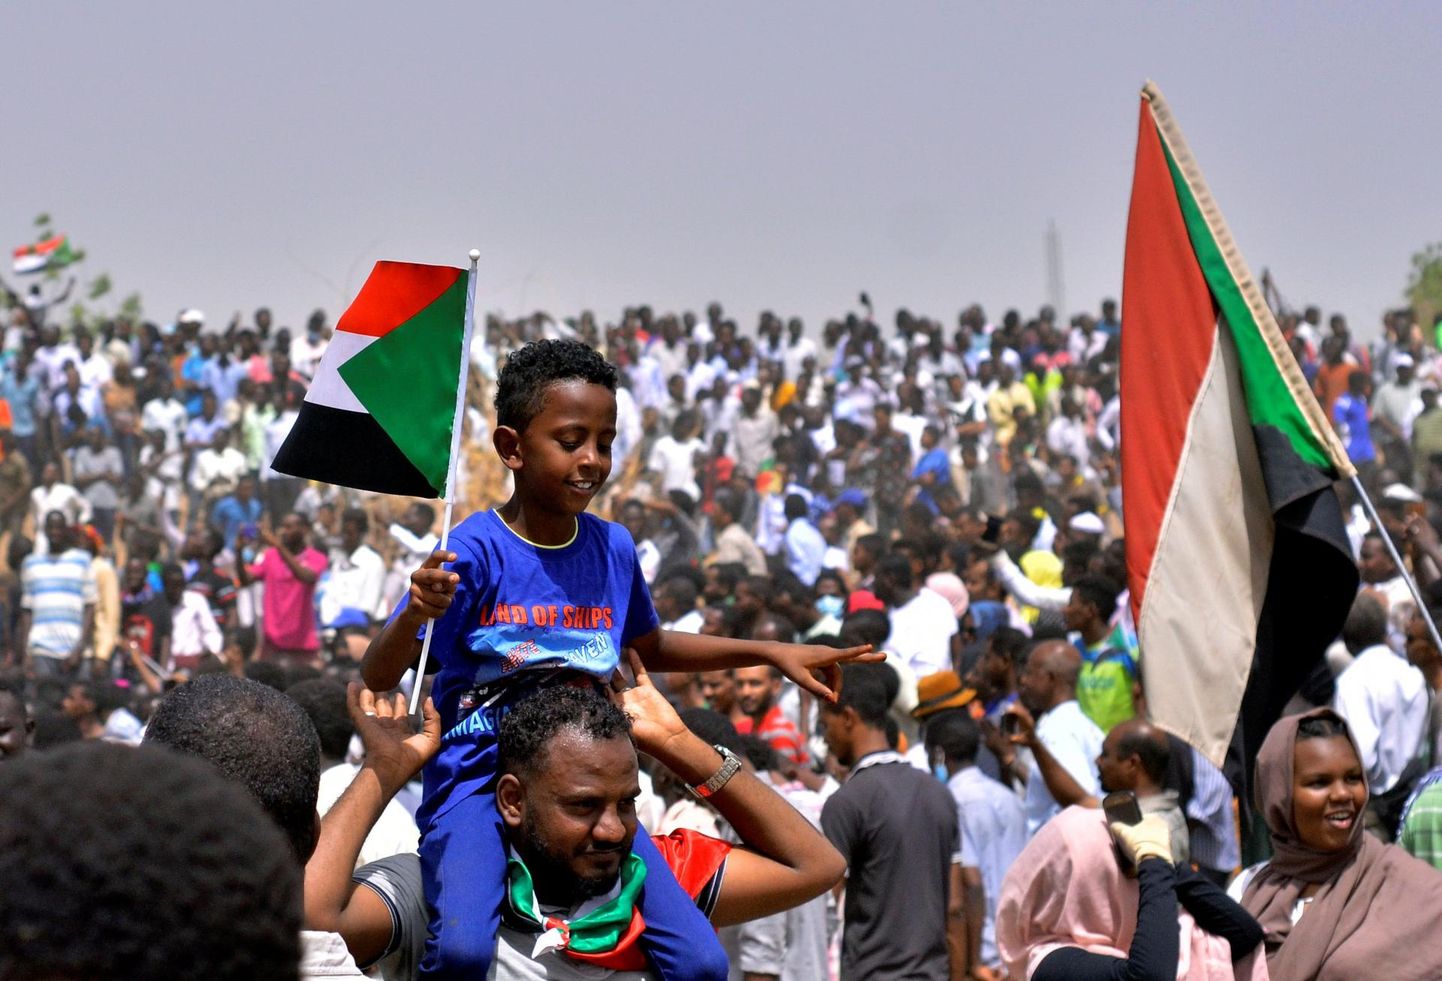 Kuuldusi autokraatse presidendi Omar al-Bashiri kukutamisest tulid eile pealinna Hartumi tänavatele tähistama terved perekonnad. 